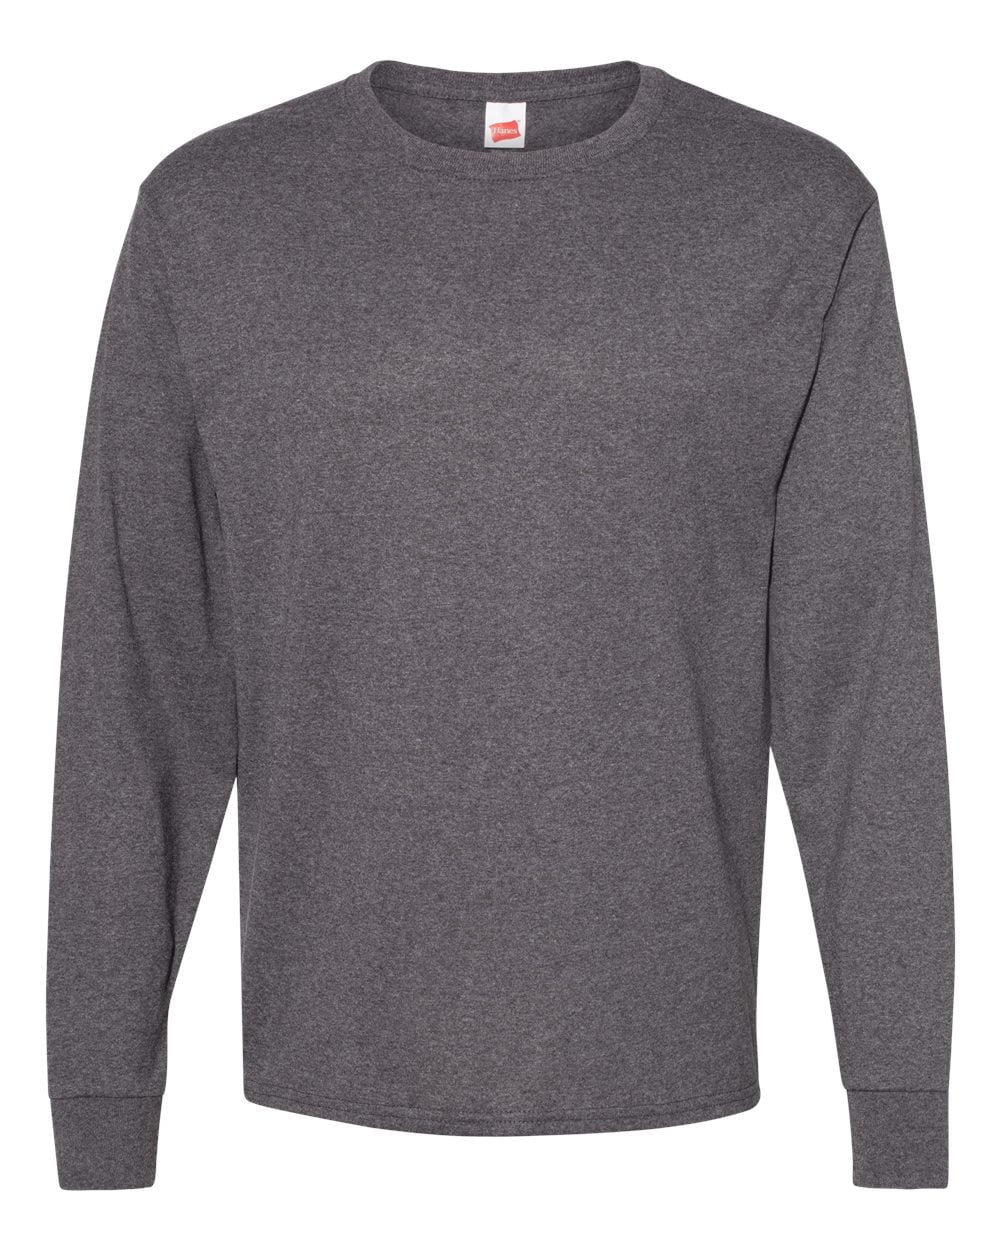 Hanes - New MmF - Men - ComfortSoft® Long Sleeve T-Shirt - Walmart.com